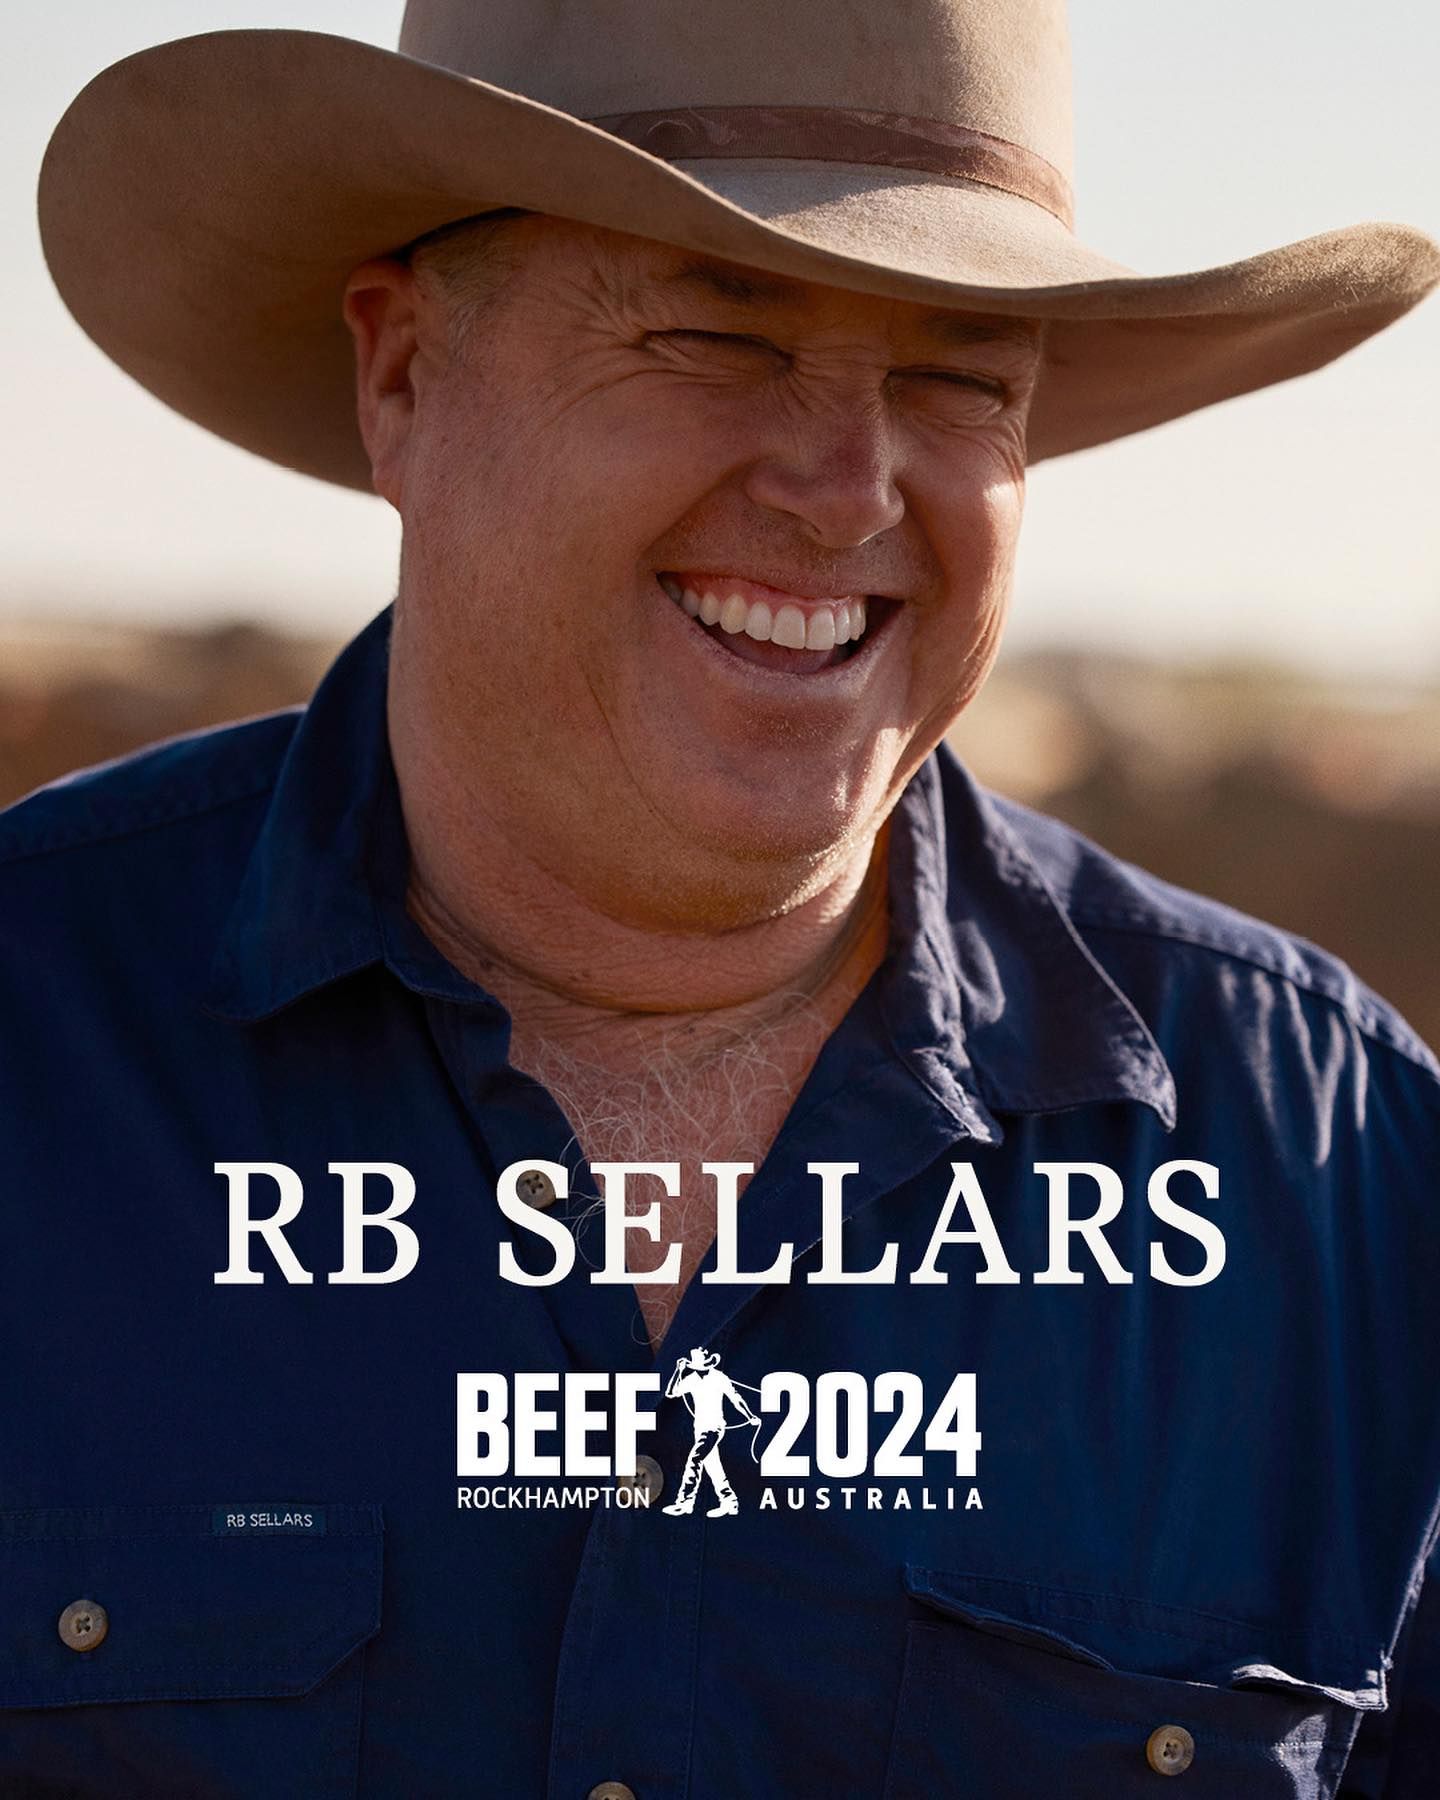 Beef2024 officially kicks off tomorrow! ...

#RBSellars #beefaustralia #beef2024